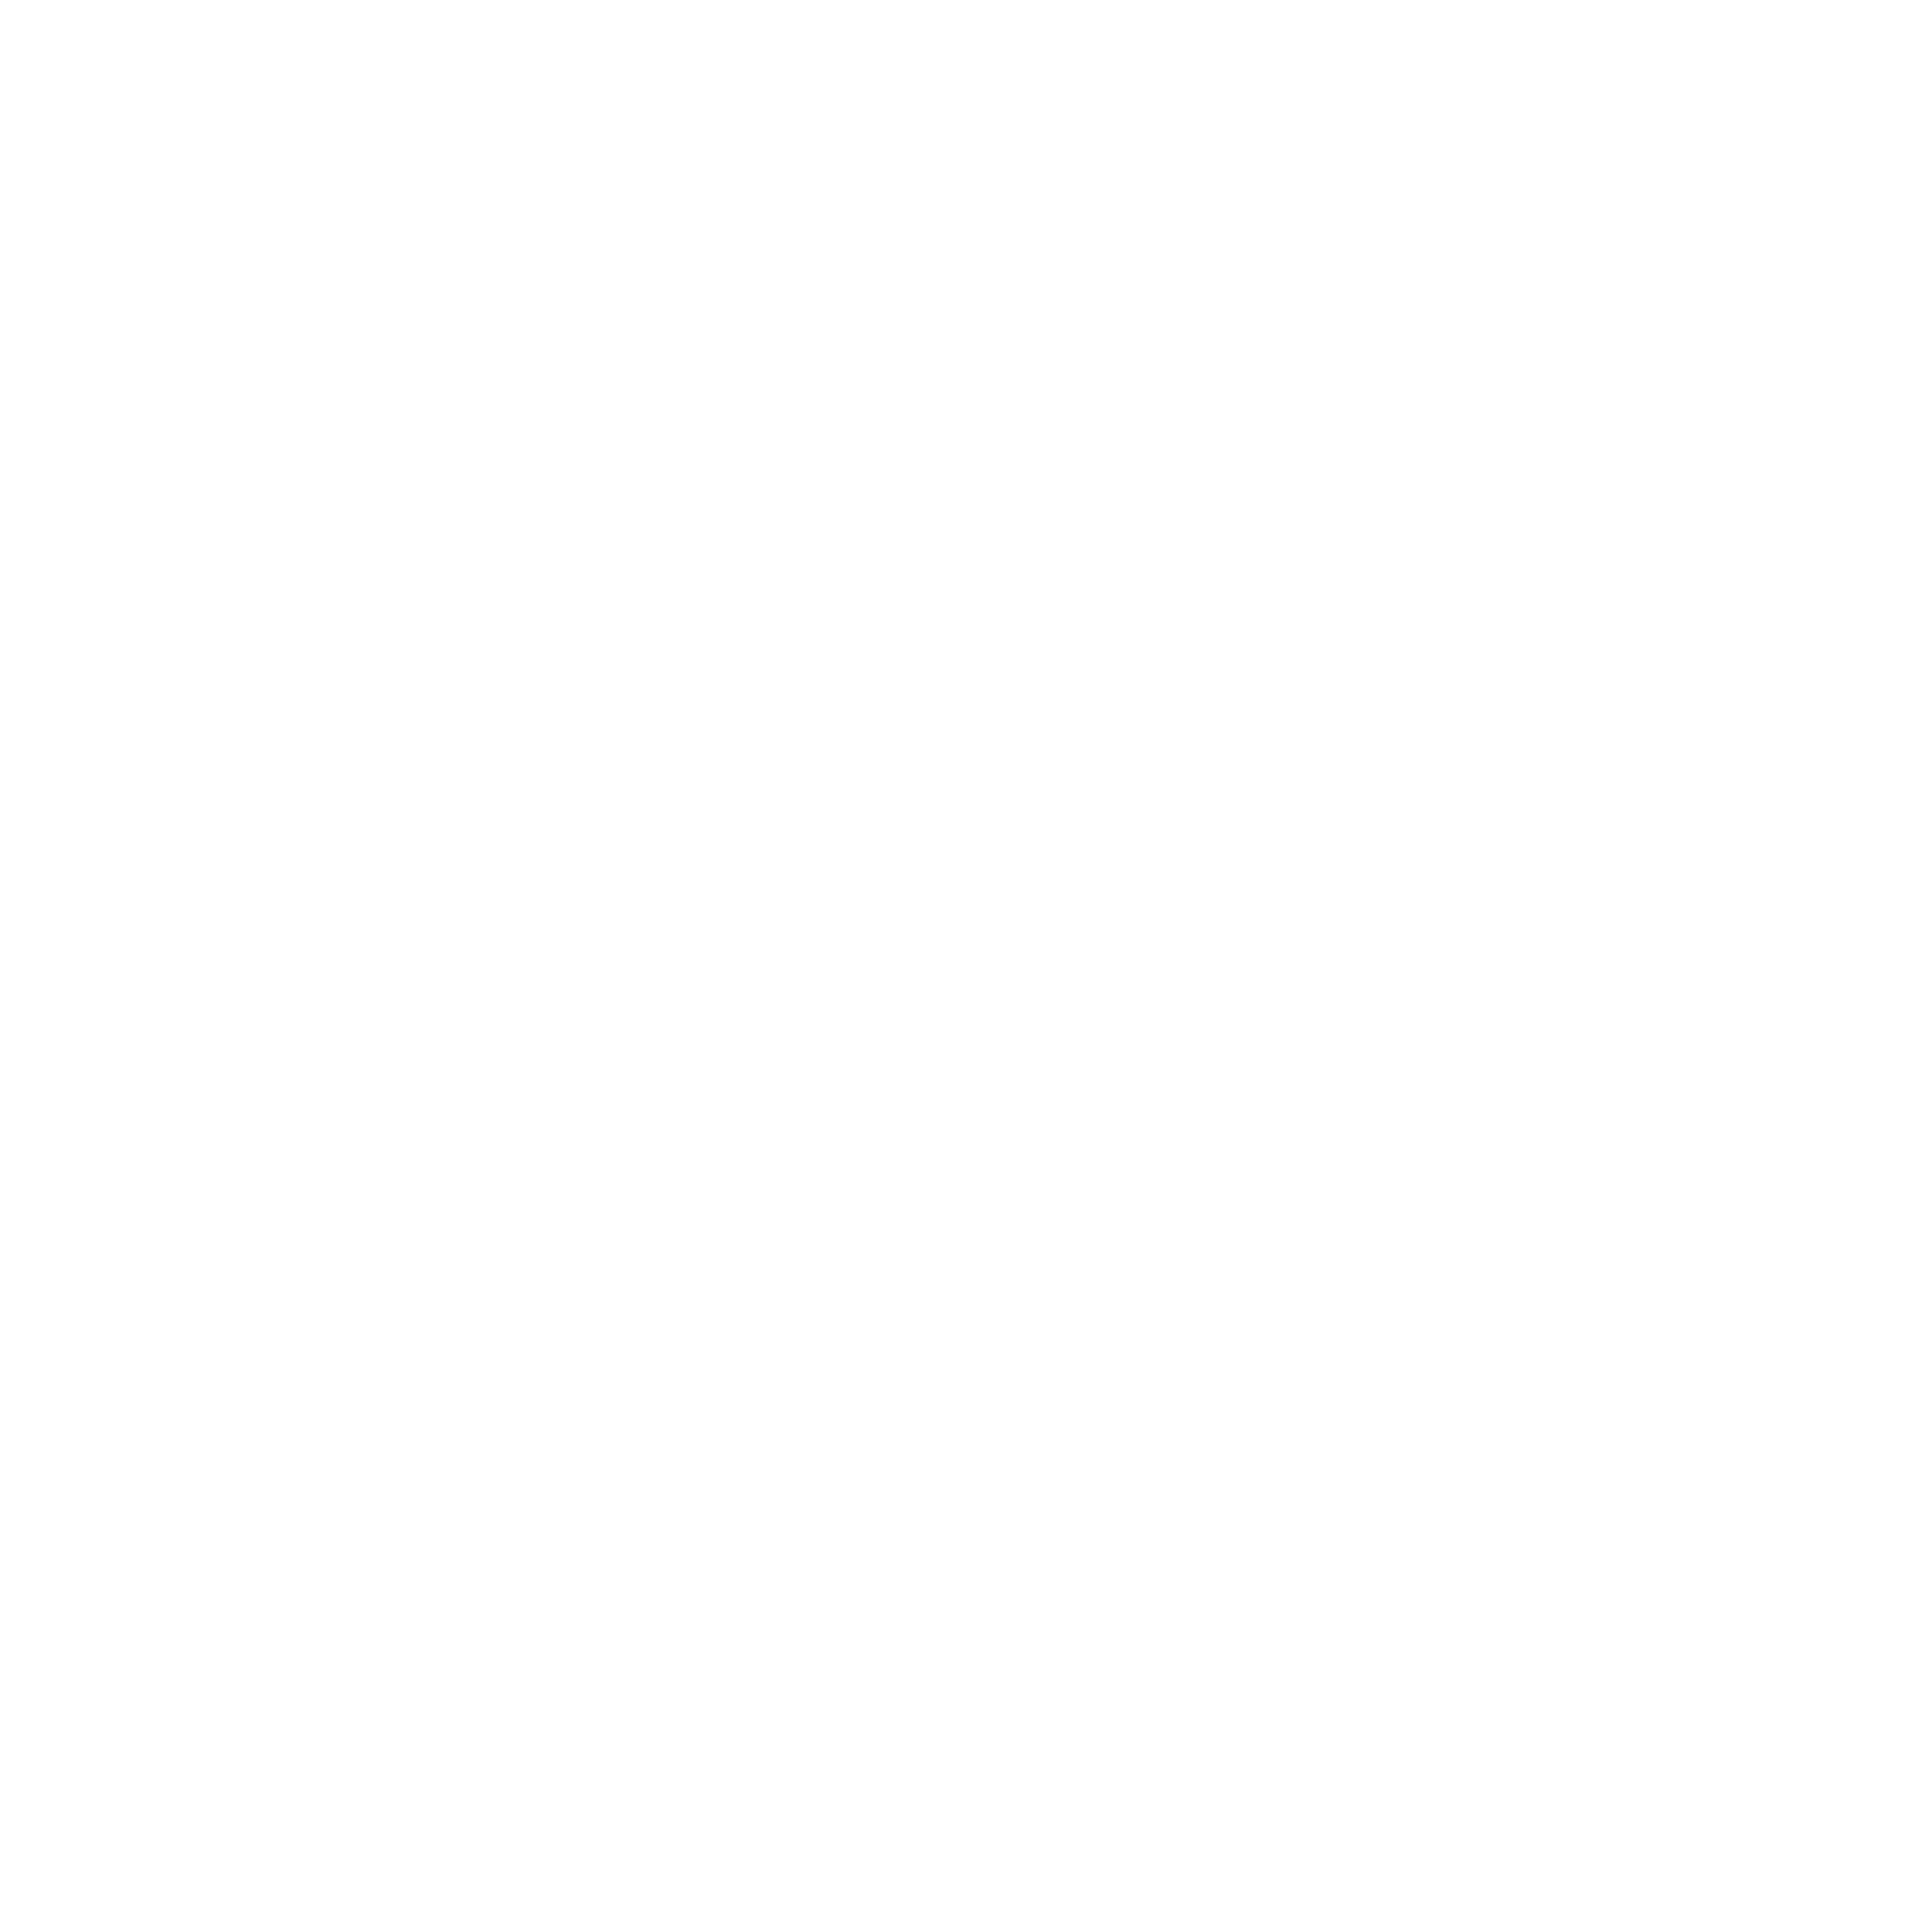 CAMERA Education Institute logo